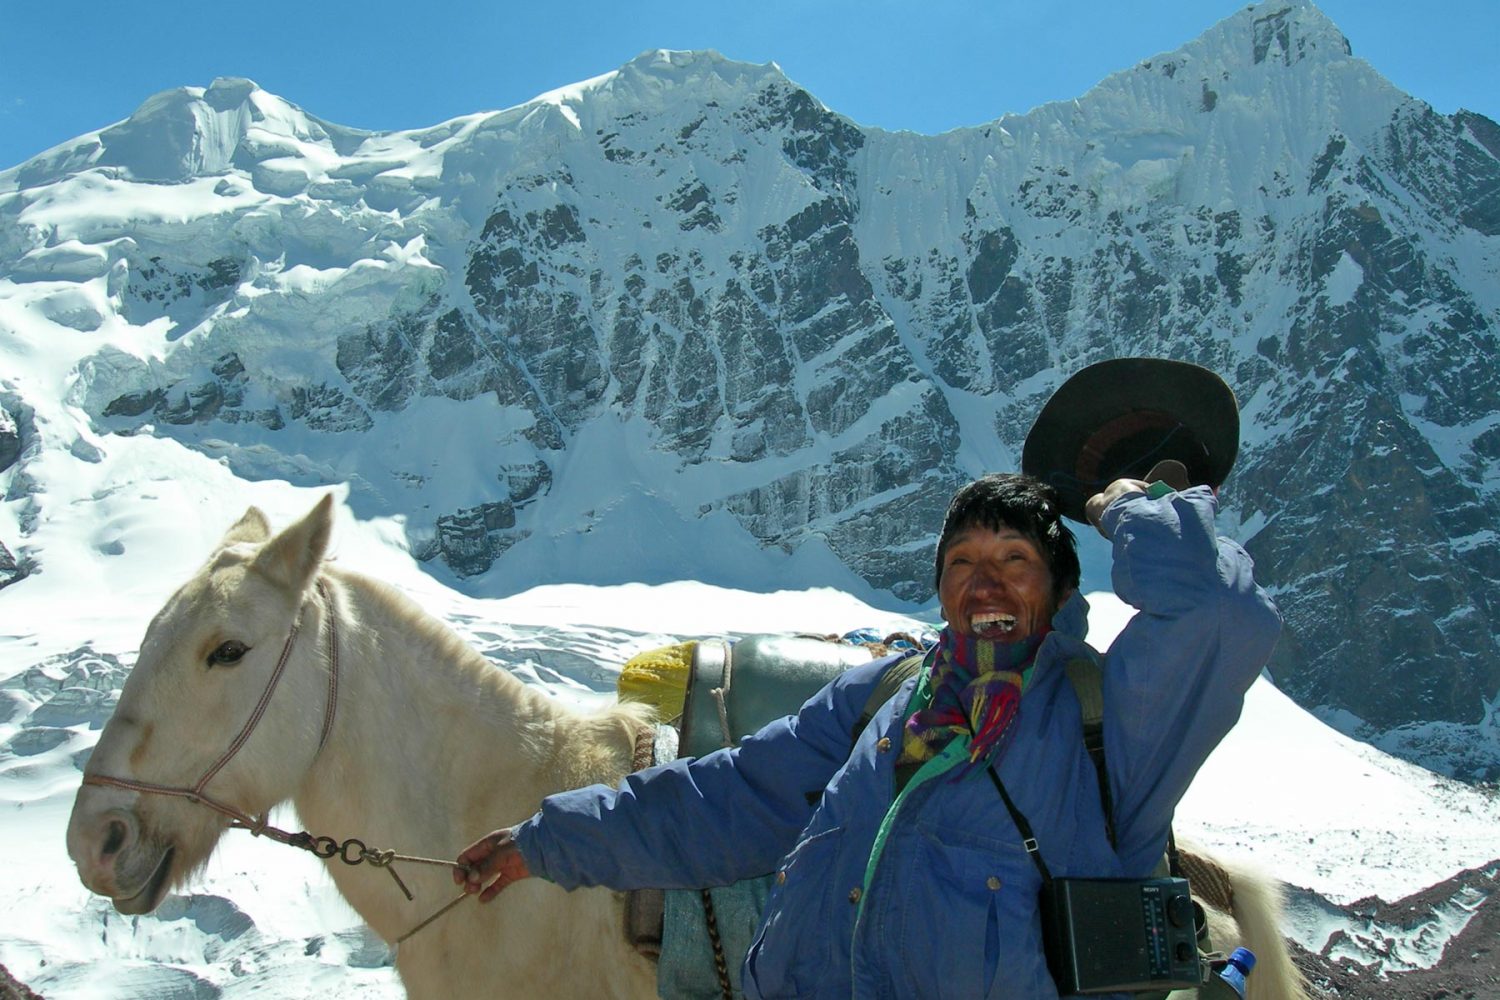 Montaña de Colores - Los Andes Travel